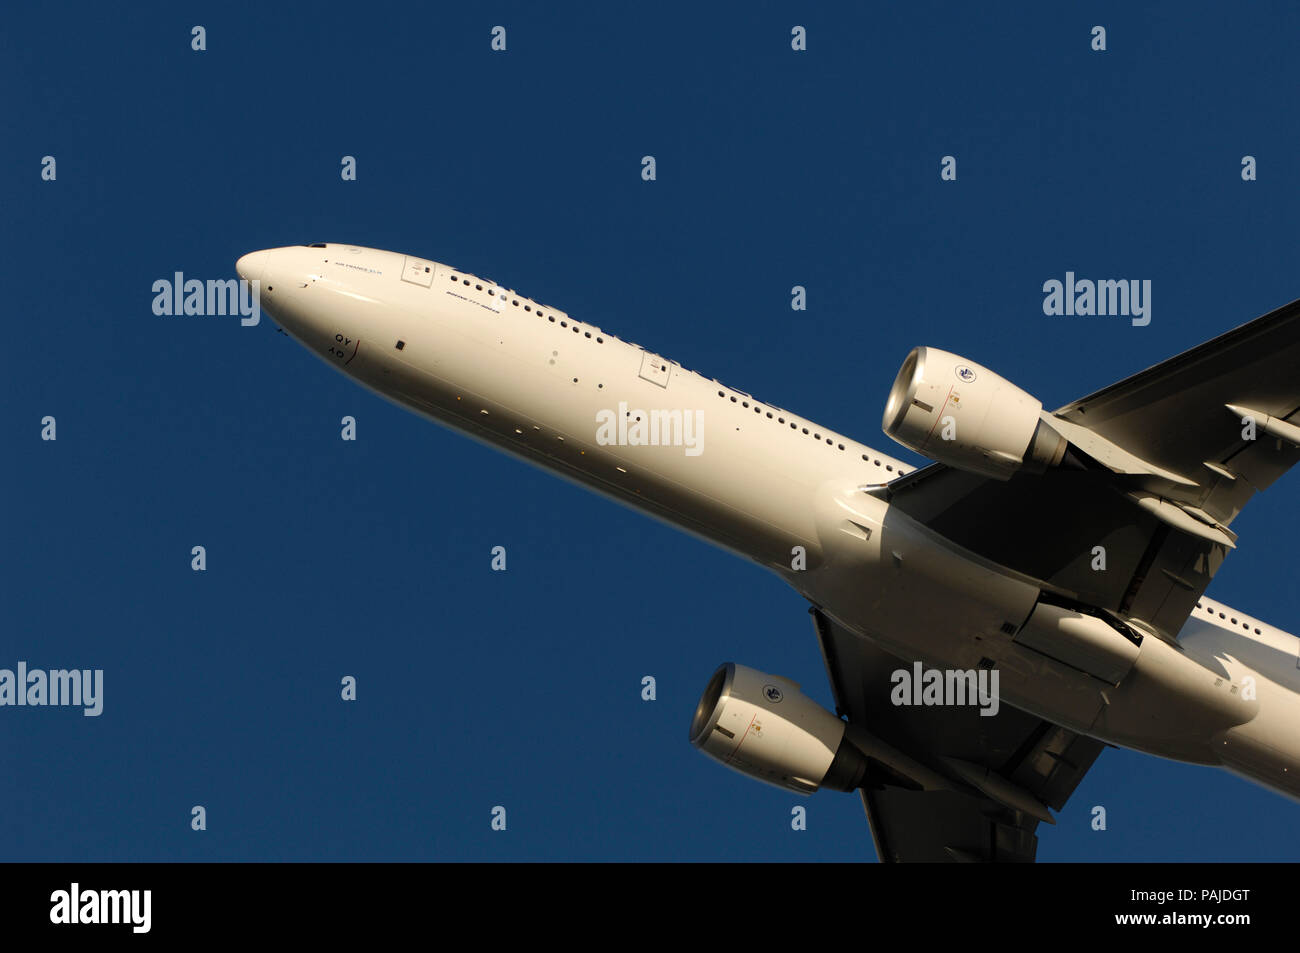 Motoren und die Nase von einem Air France Boeing 777-300Flying enroute. Teil des besonderen Boeing 7-Serie airliner Kunden airshow Feiern auf t Stockfoto